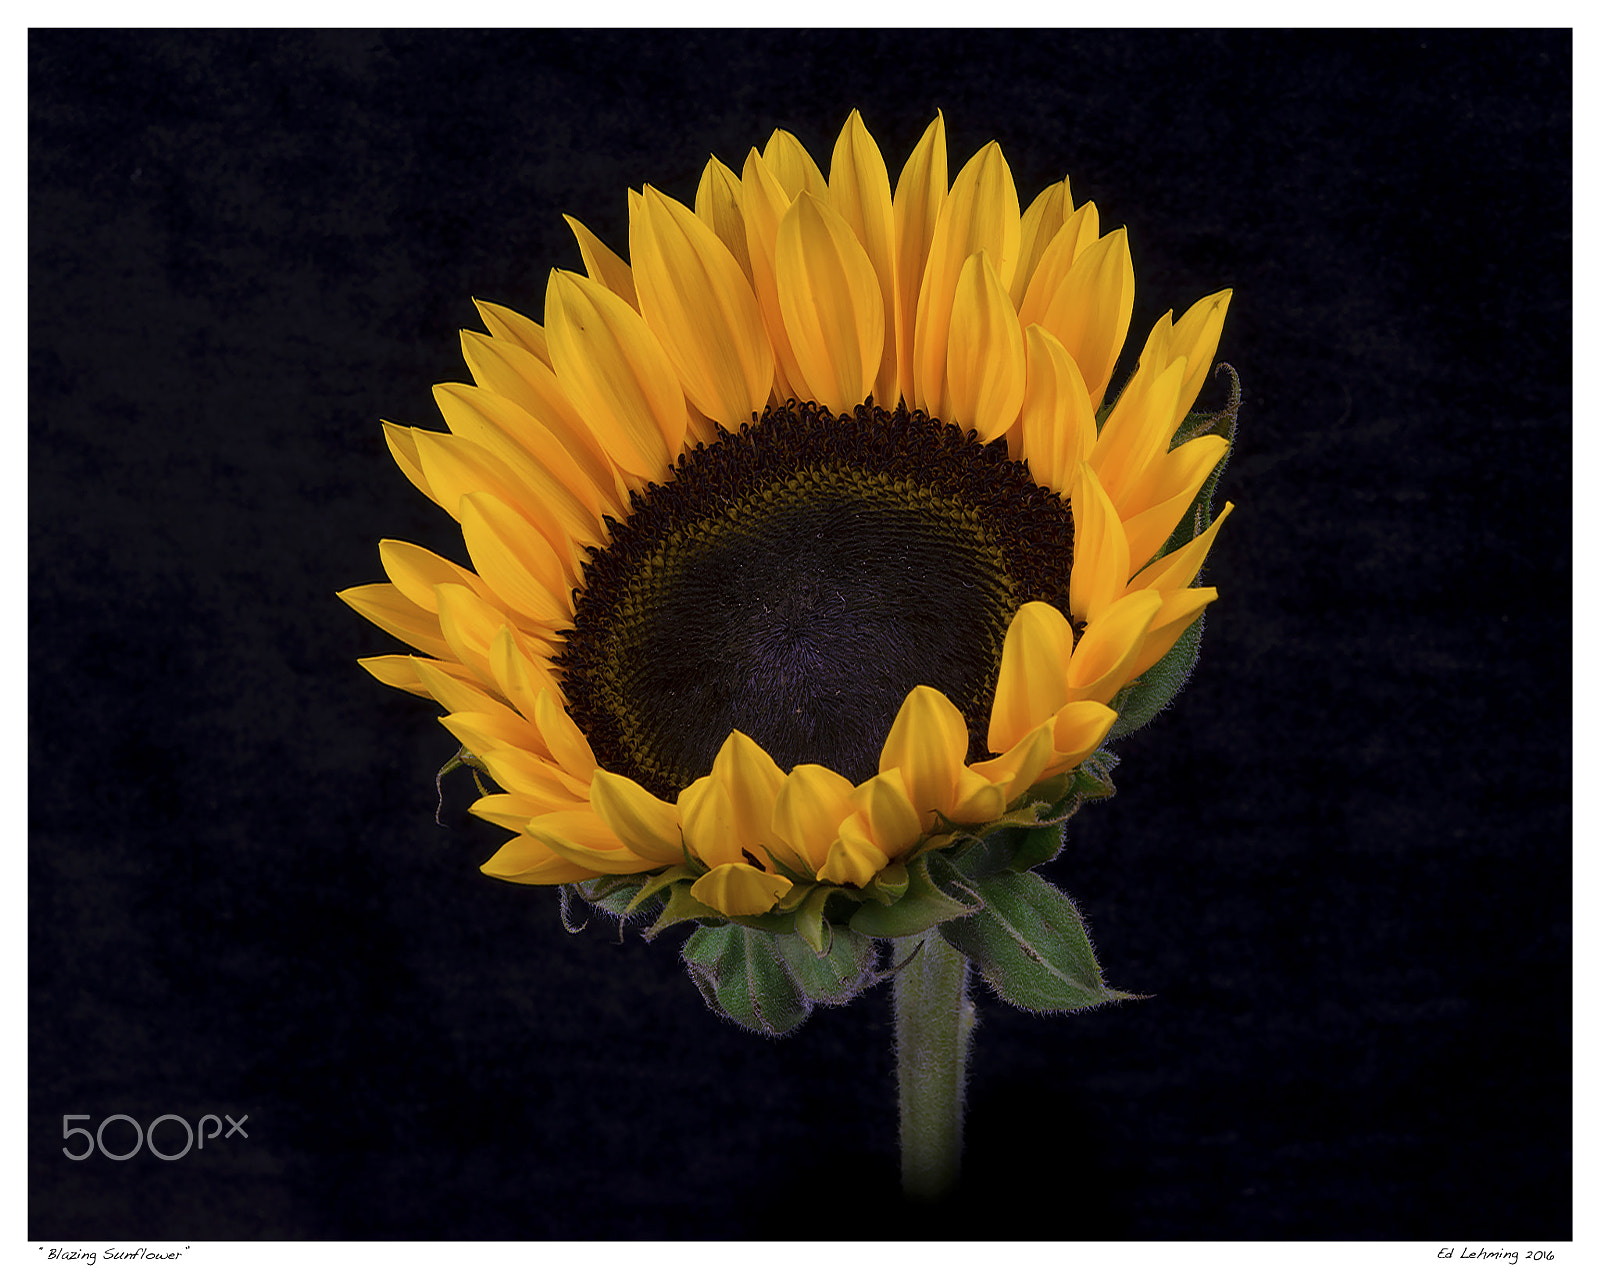 Nikon D800 + AF Zoom-Nikkor 28-70mm f/3.5-4.5D sample photo. Blazing sunflower photography